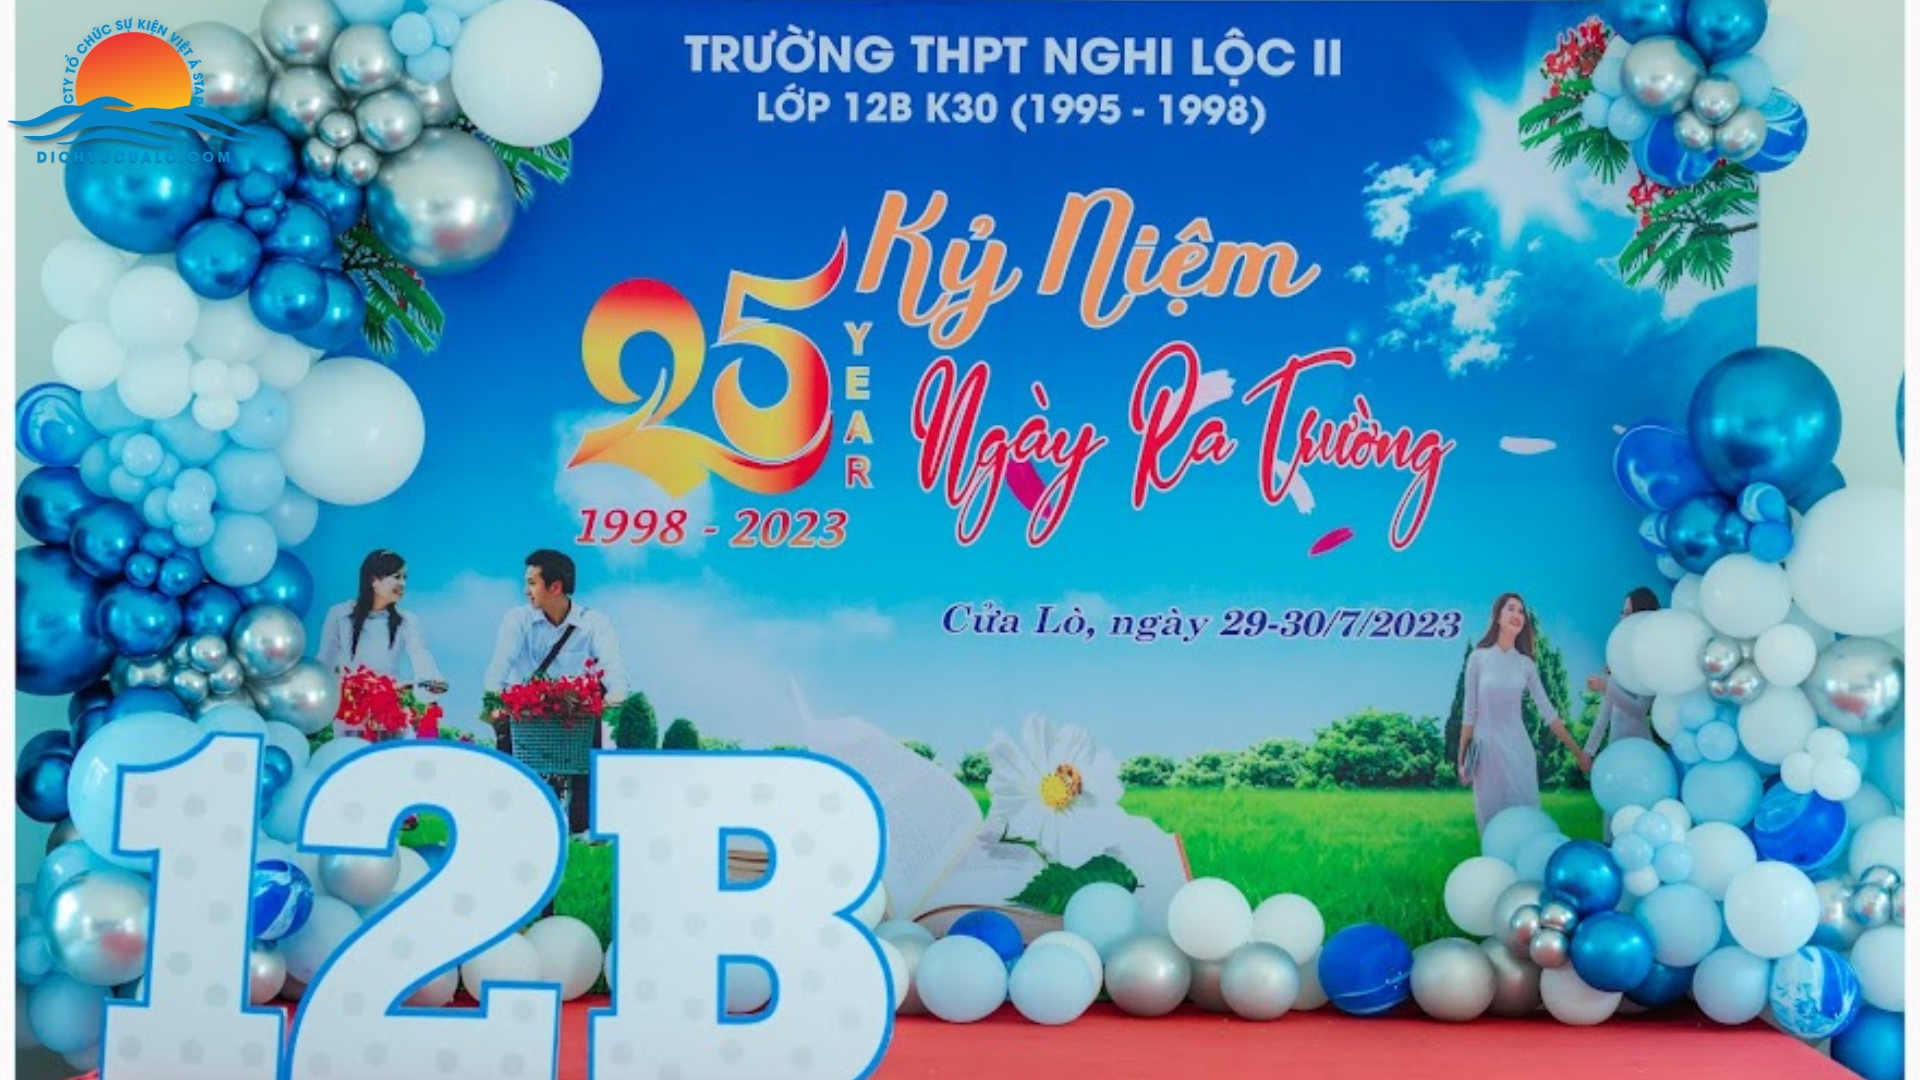 hop-lop-12b-k30-1995-1998-truong-thpt-nghi-loc-ii